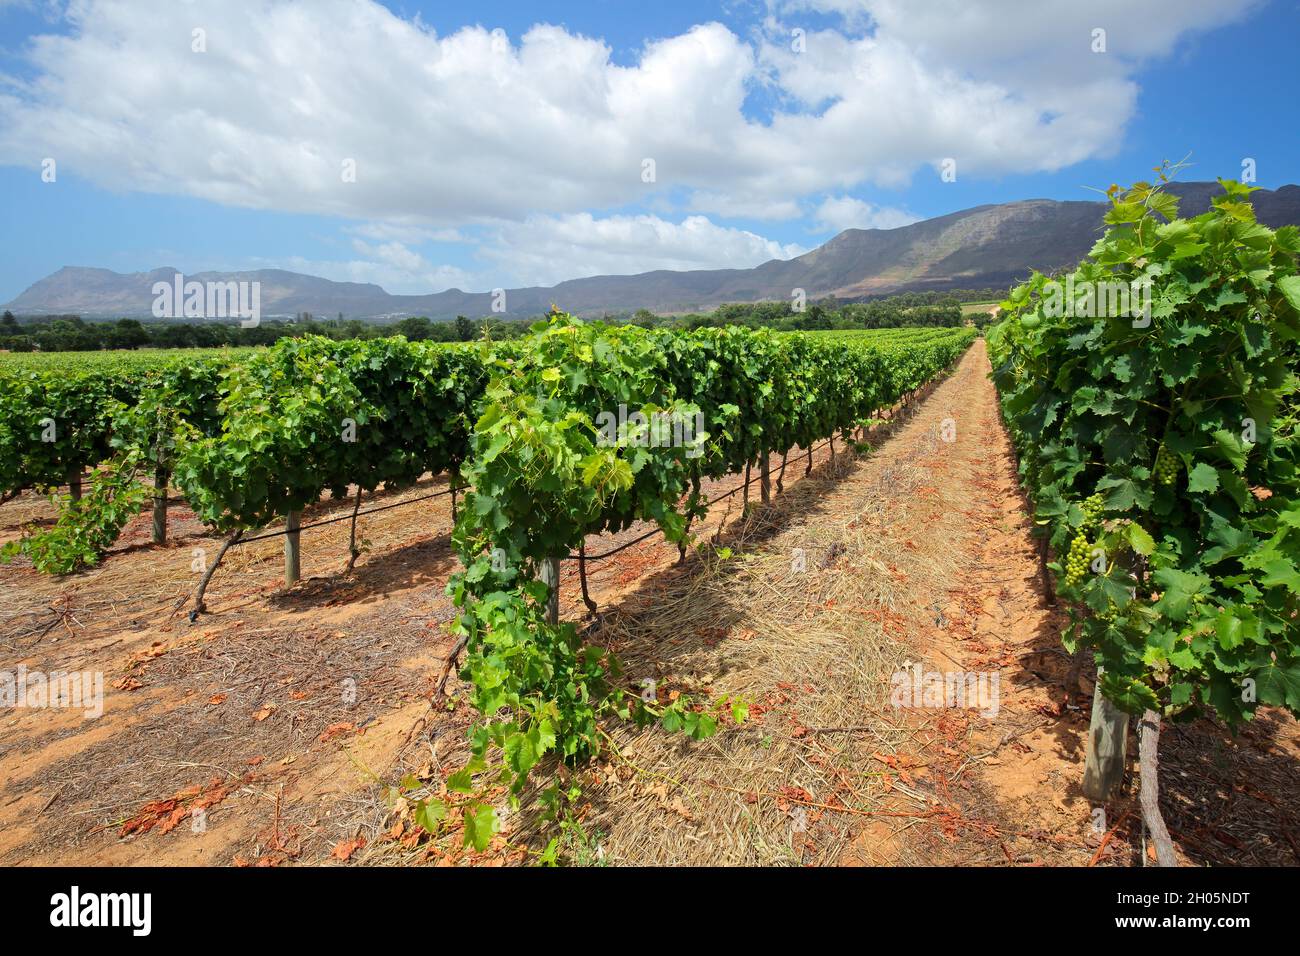 El paisaje de la viña contra un telón de fondo de montañas, Ciudad del Cabo, Sudáfrica Foto de stock